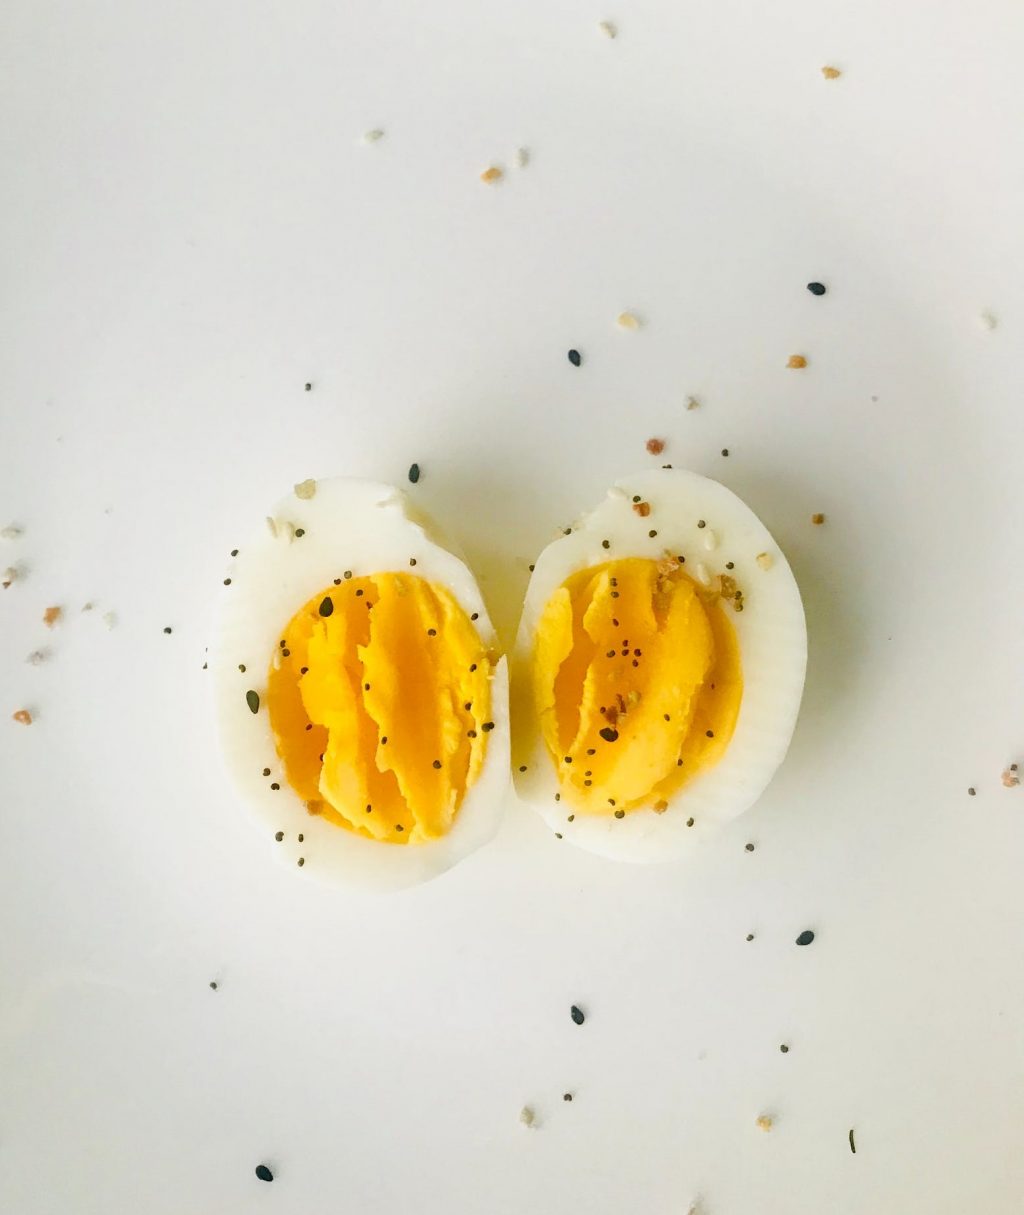 cách trị thâm sẹo bằng thực phẩm - trứng